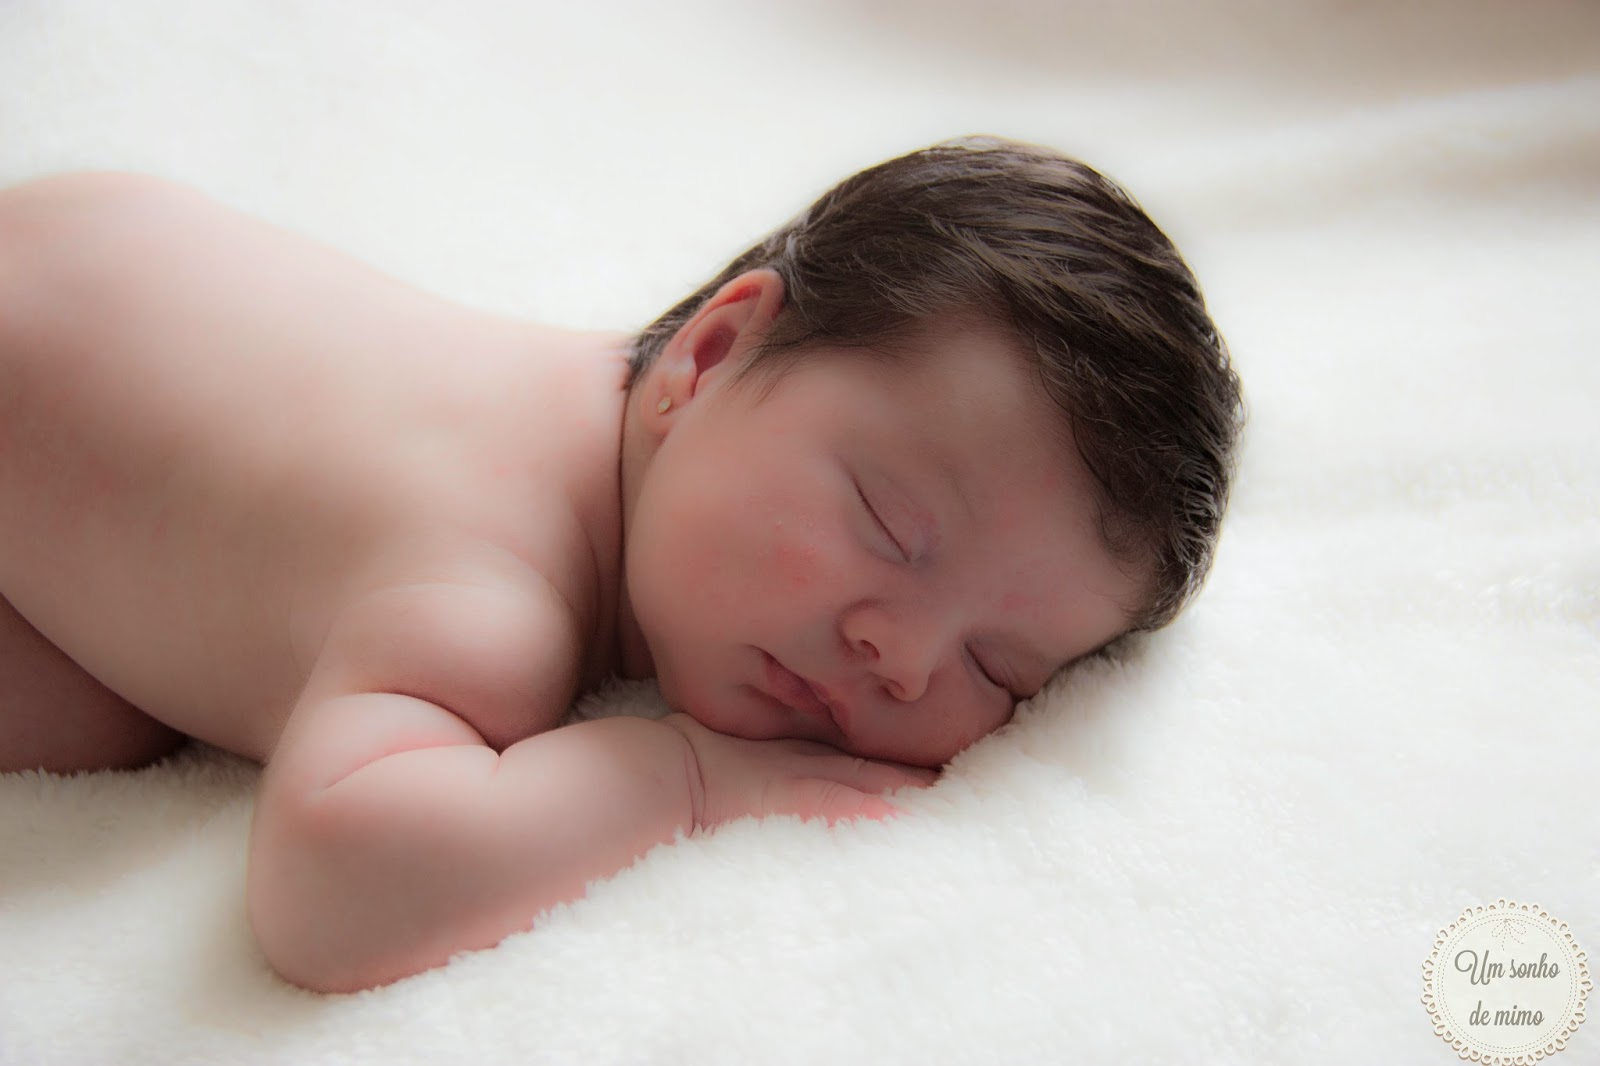 Fotografia newborn bh, fotografia newborn belo horizonte, fotografia newborn, um sonho de mimo